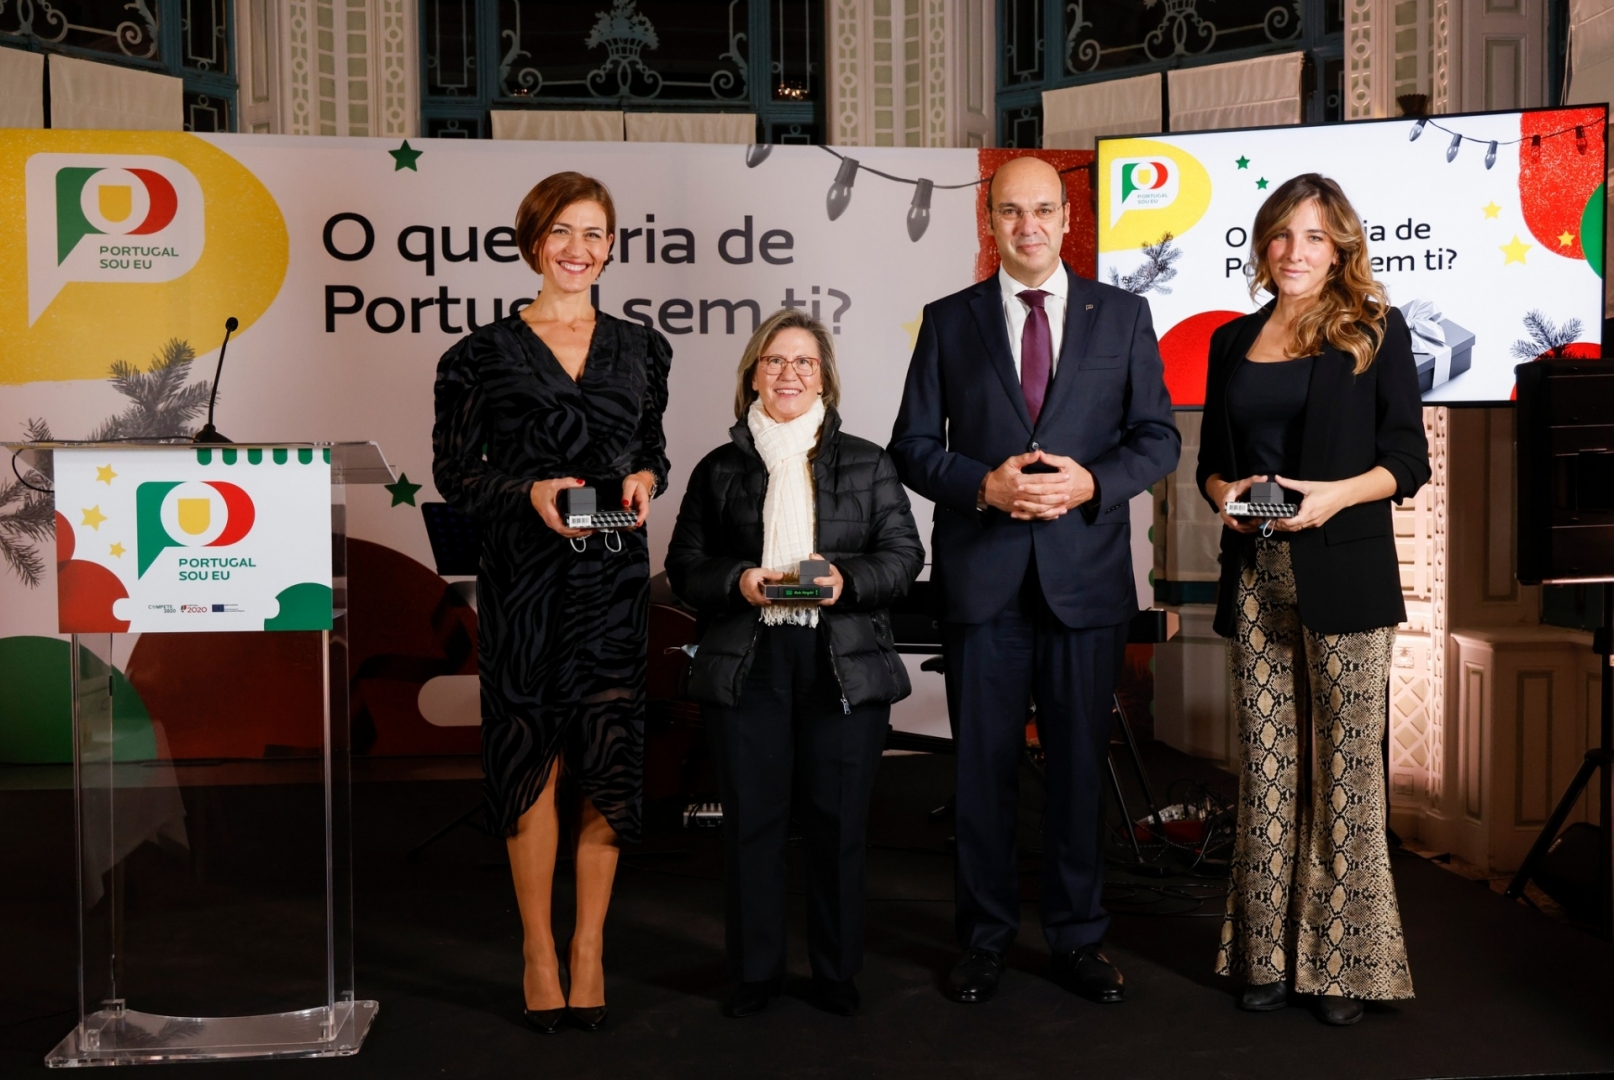 Carolina Piteira Press “Portugal Sou Eu” apresenta fase IV do programa e novos Embaixadores (1)